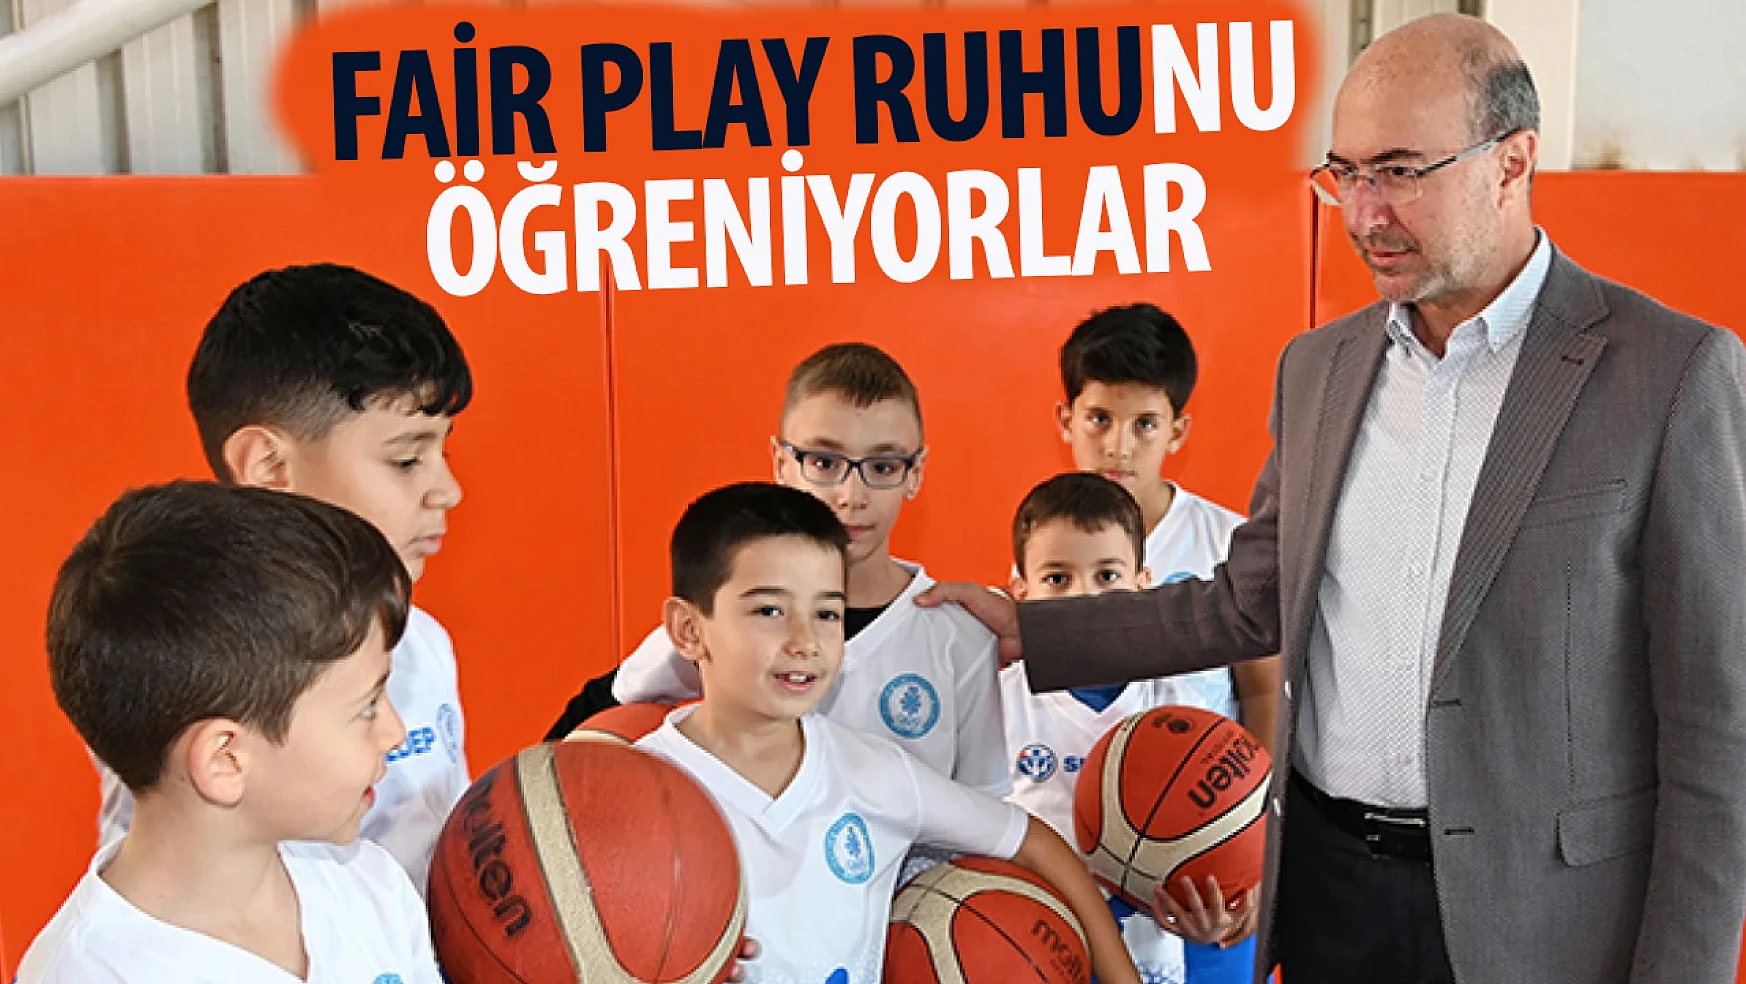 Sporun merkezi Selçuklu'da fair play ruhu yaşatılıyor!